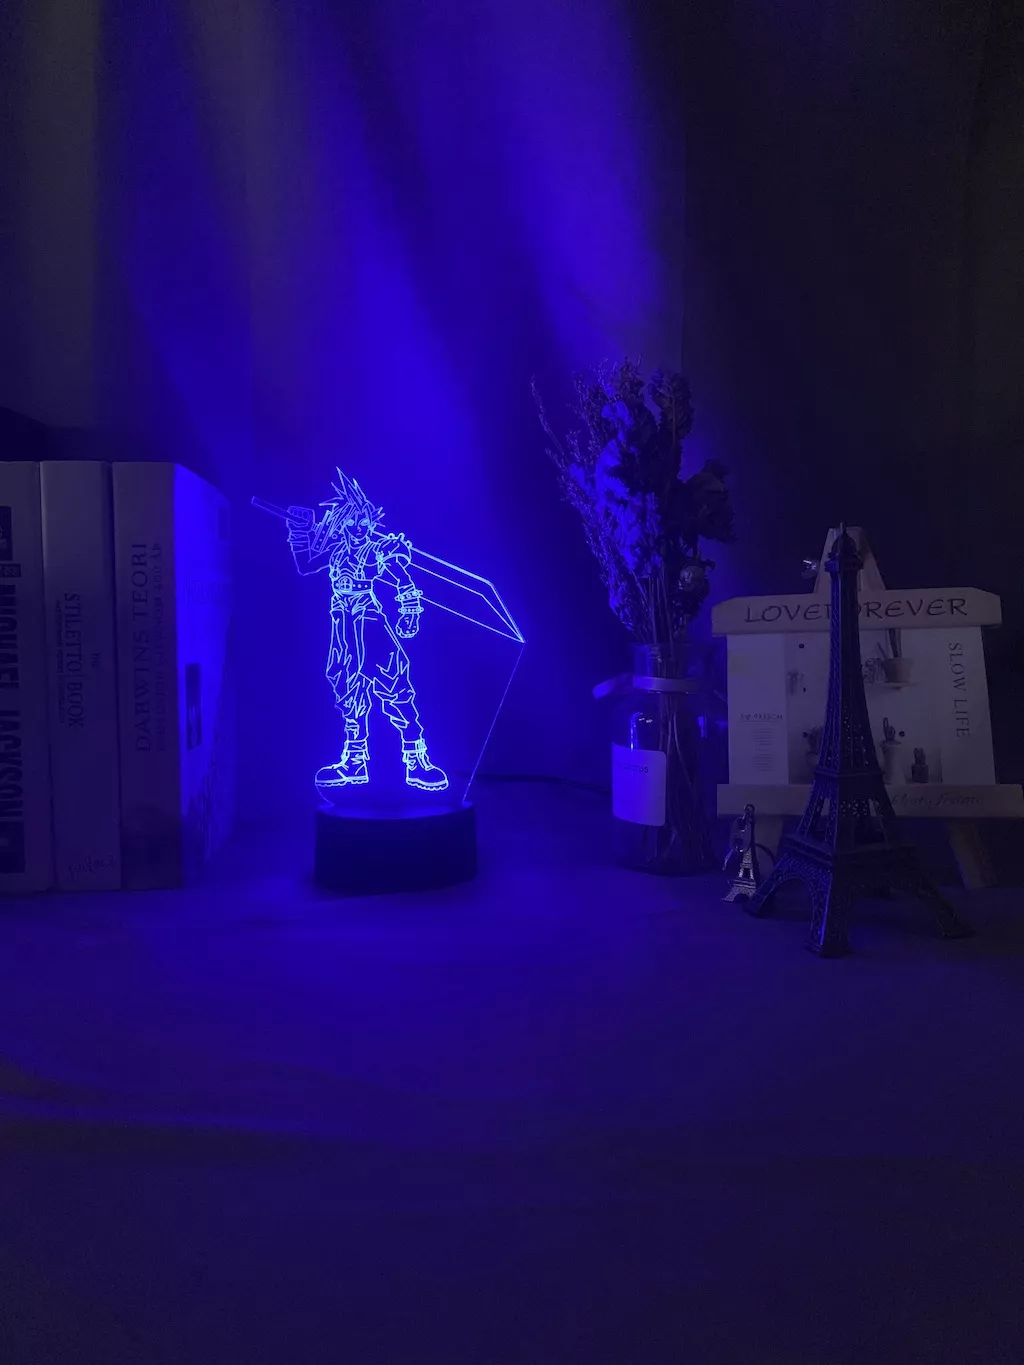 1421634651 1 Luminária Final Fantasy luz noturna em led 3d, crianças, luz noturna colorida para decoração de quarto, usb, lâmpada de mesa, jogo final, presente fantasia